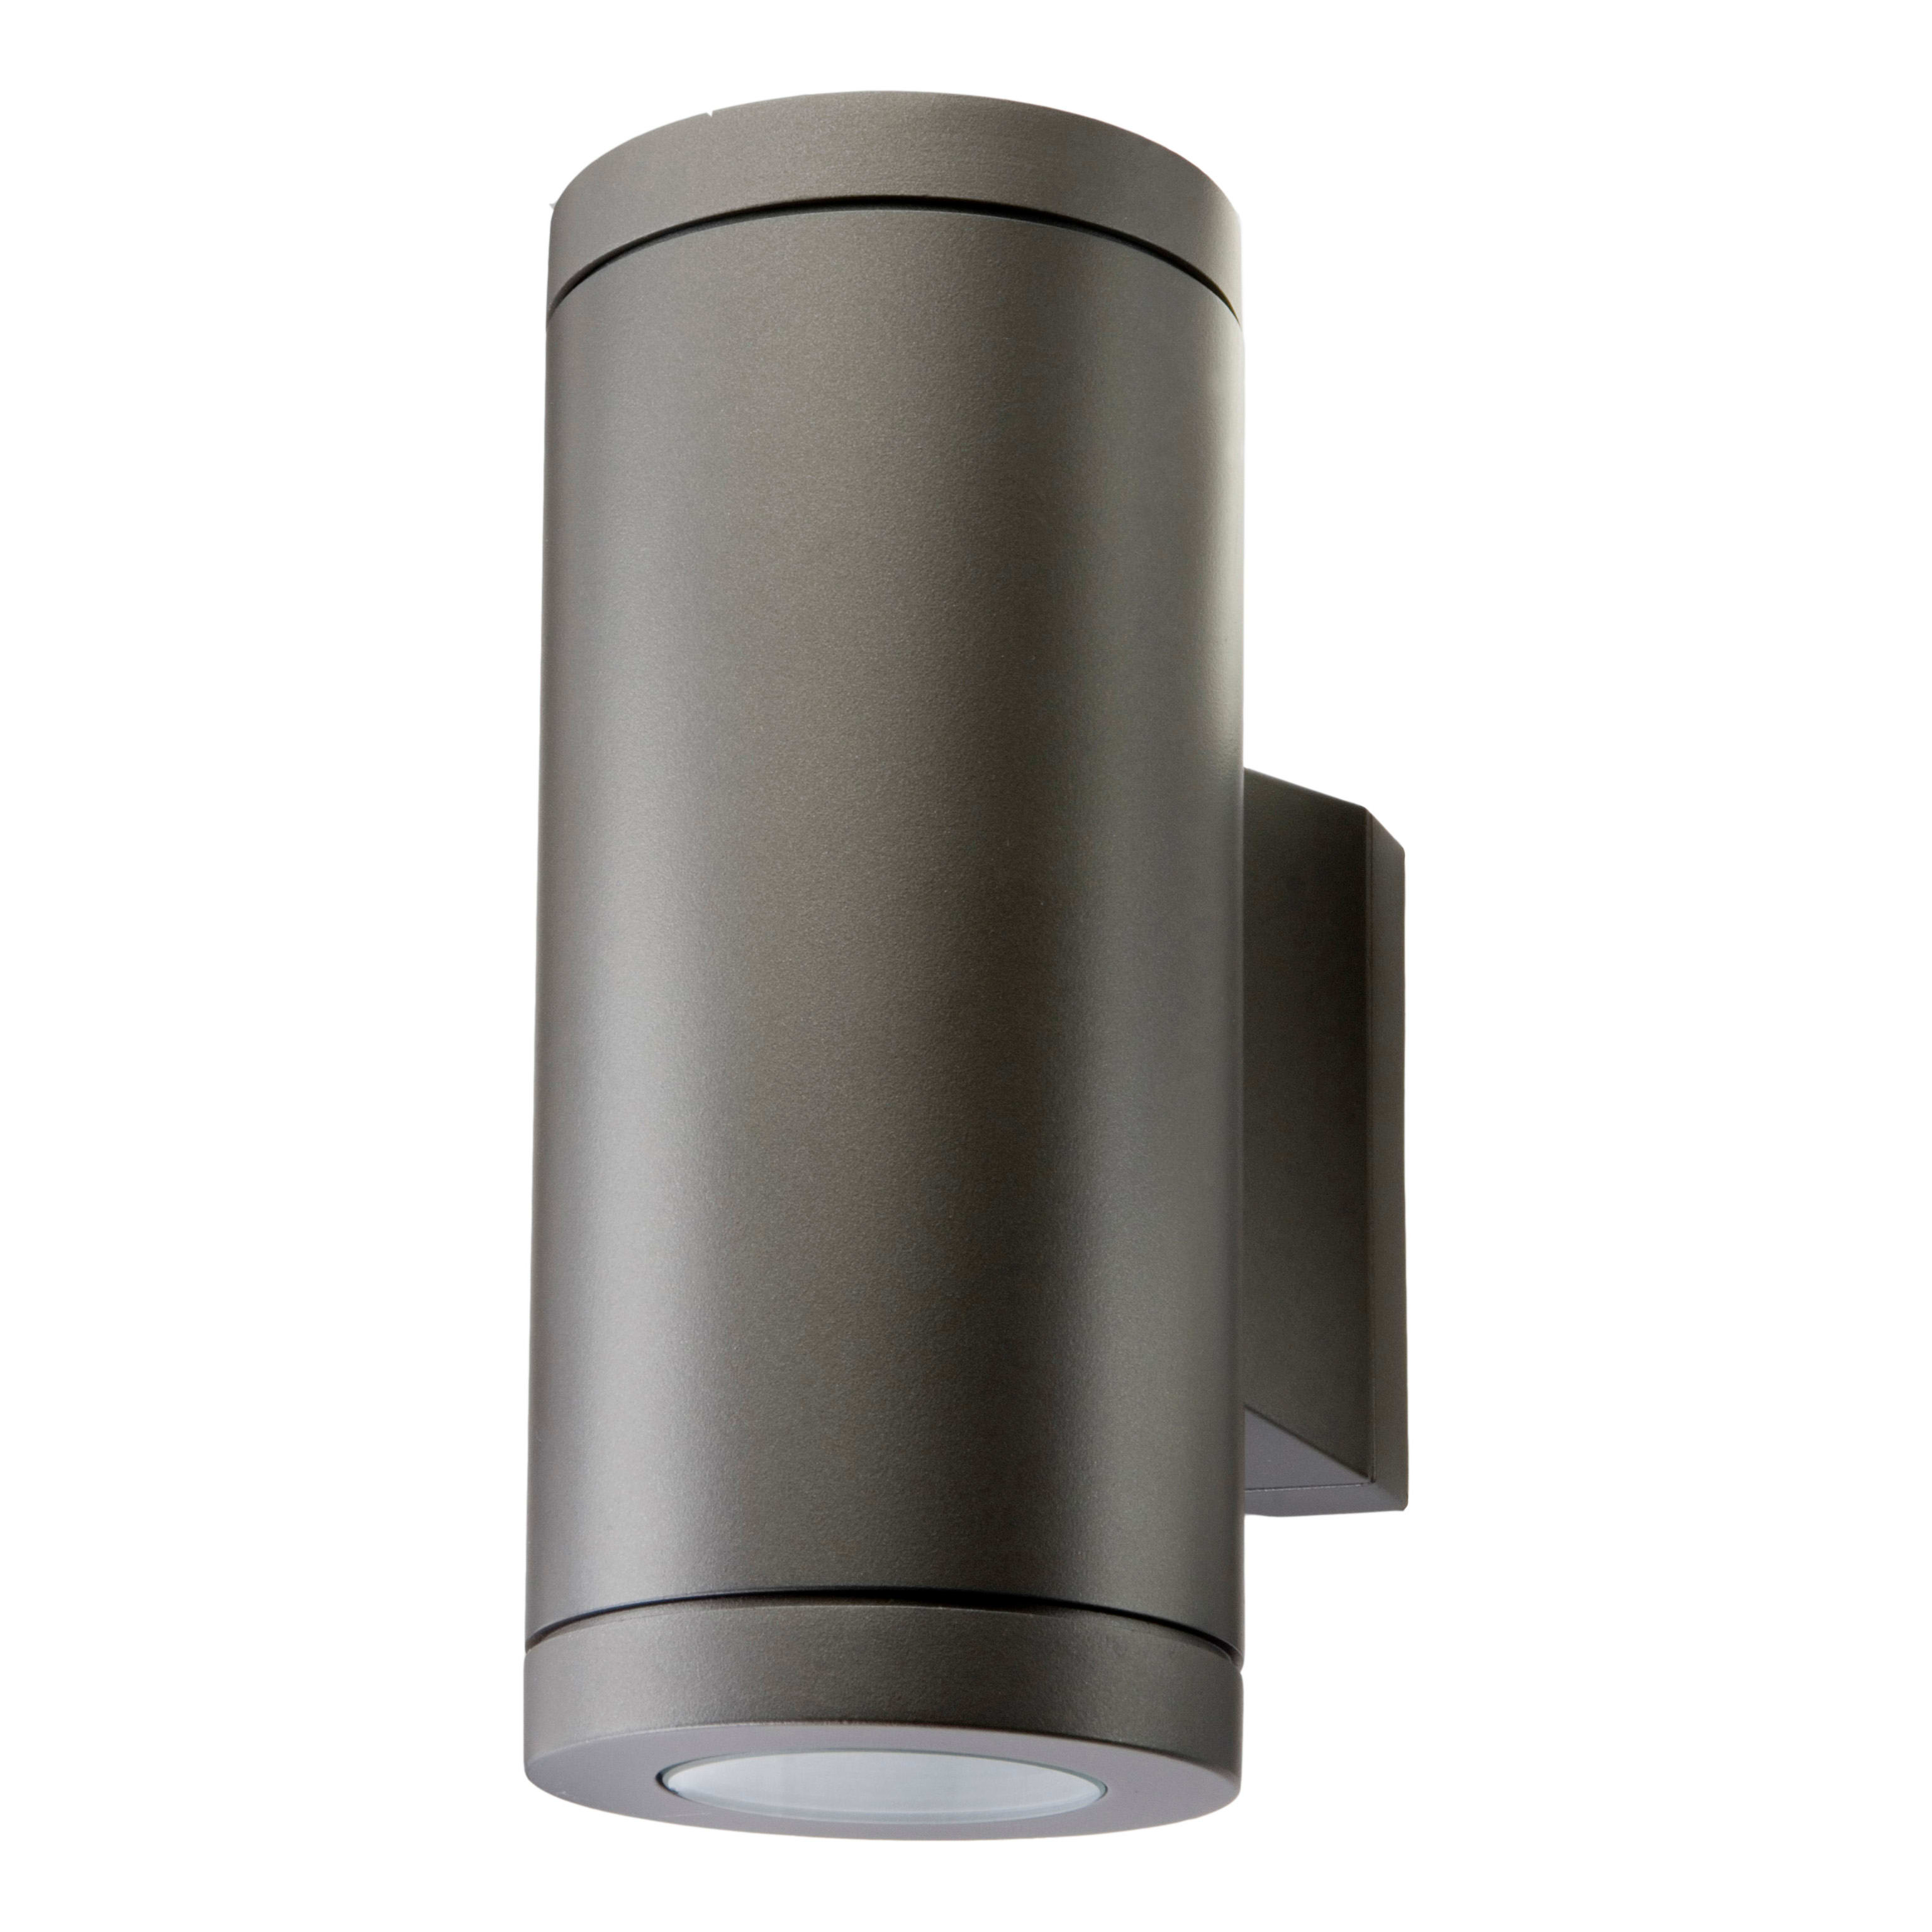 SG Lighting - Metro applique cylindrique graphite 2xGU10 classe II IP65